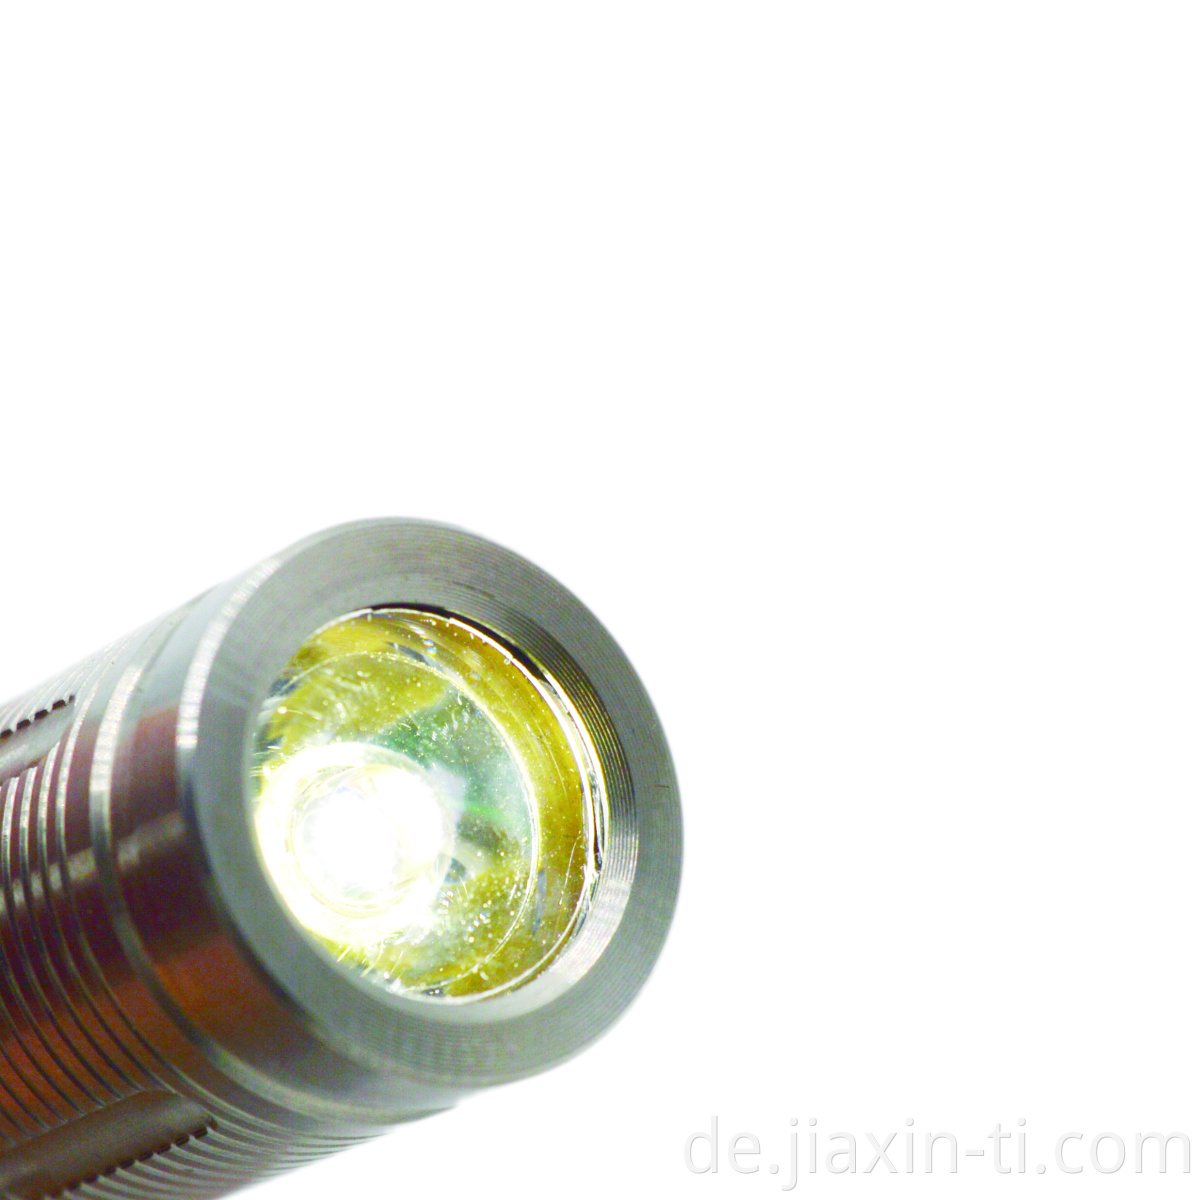 titanium flashlight